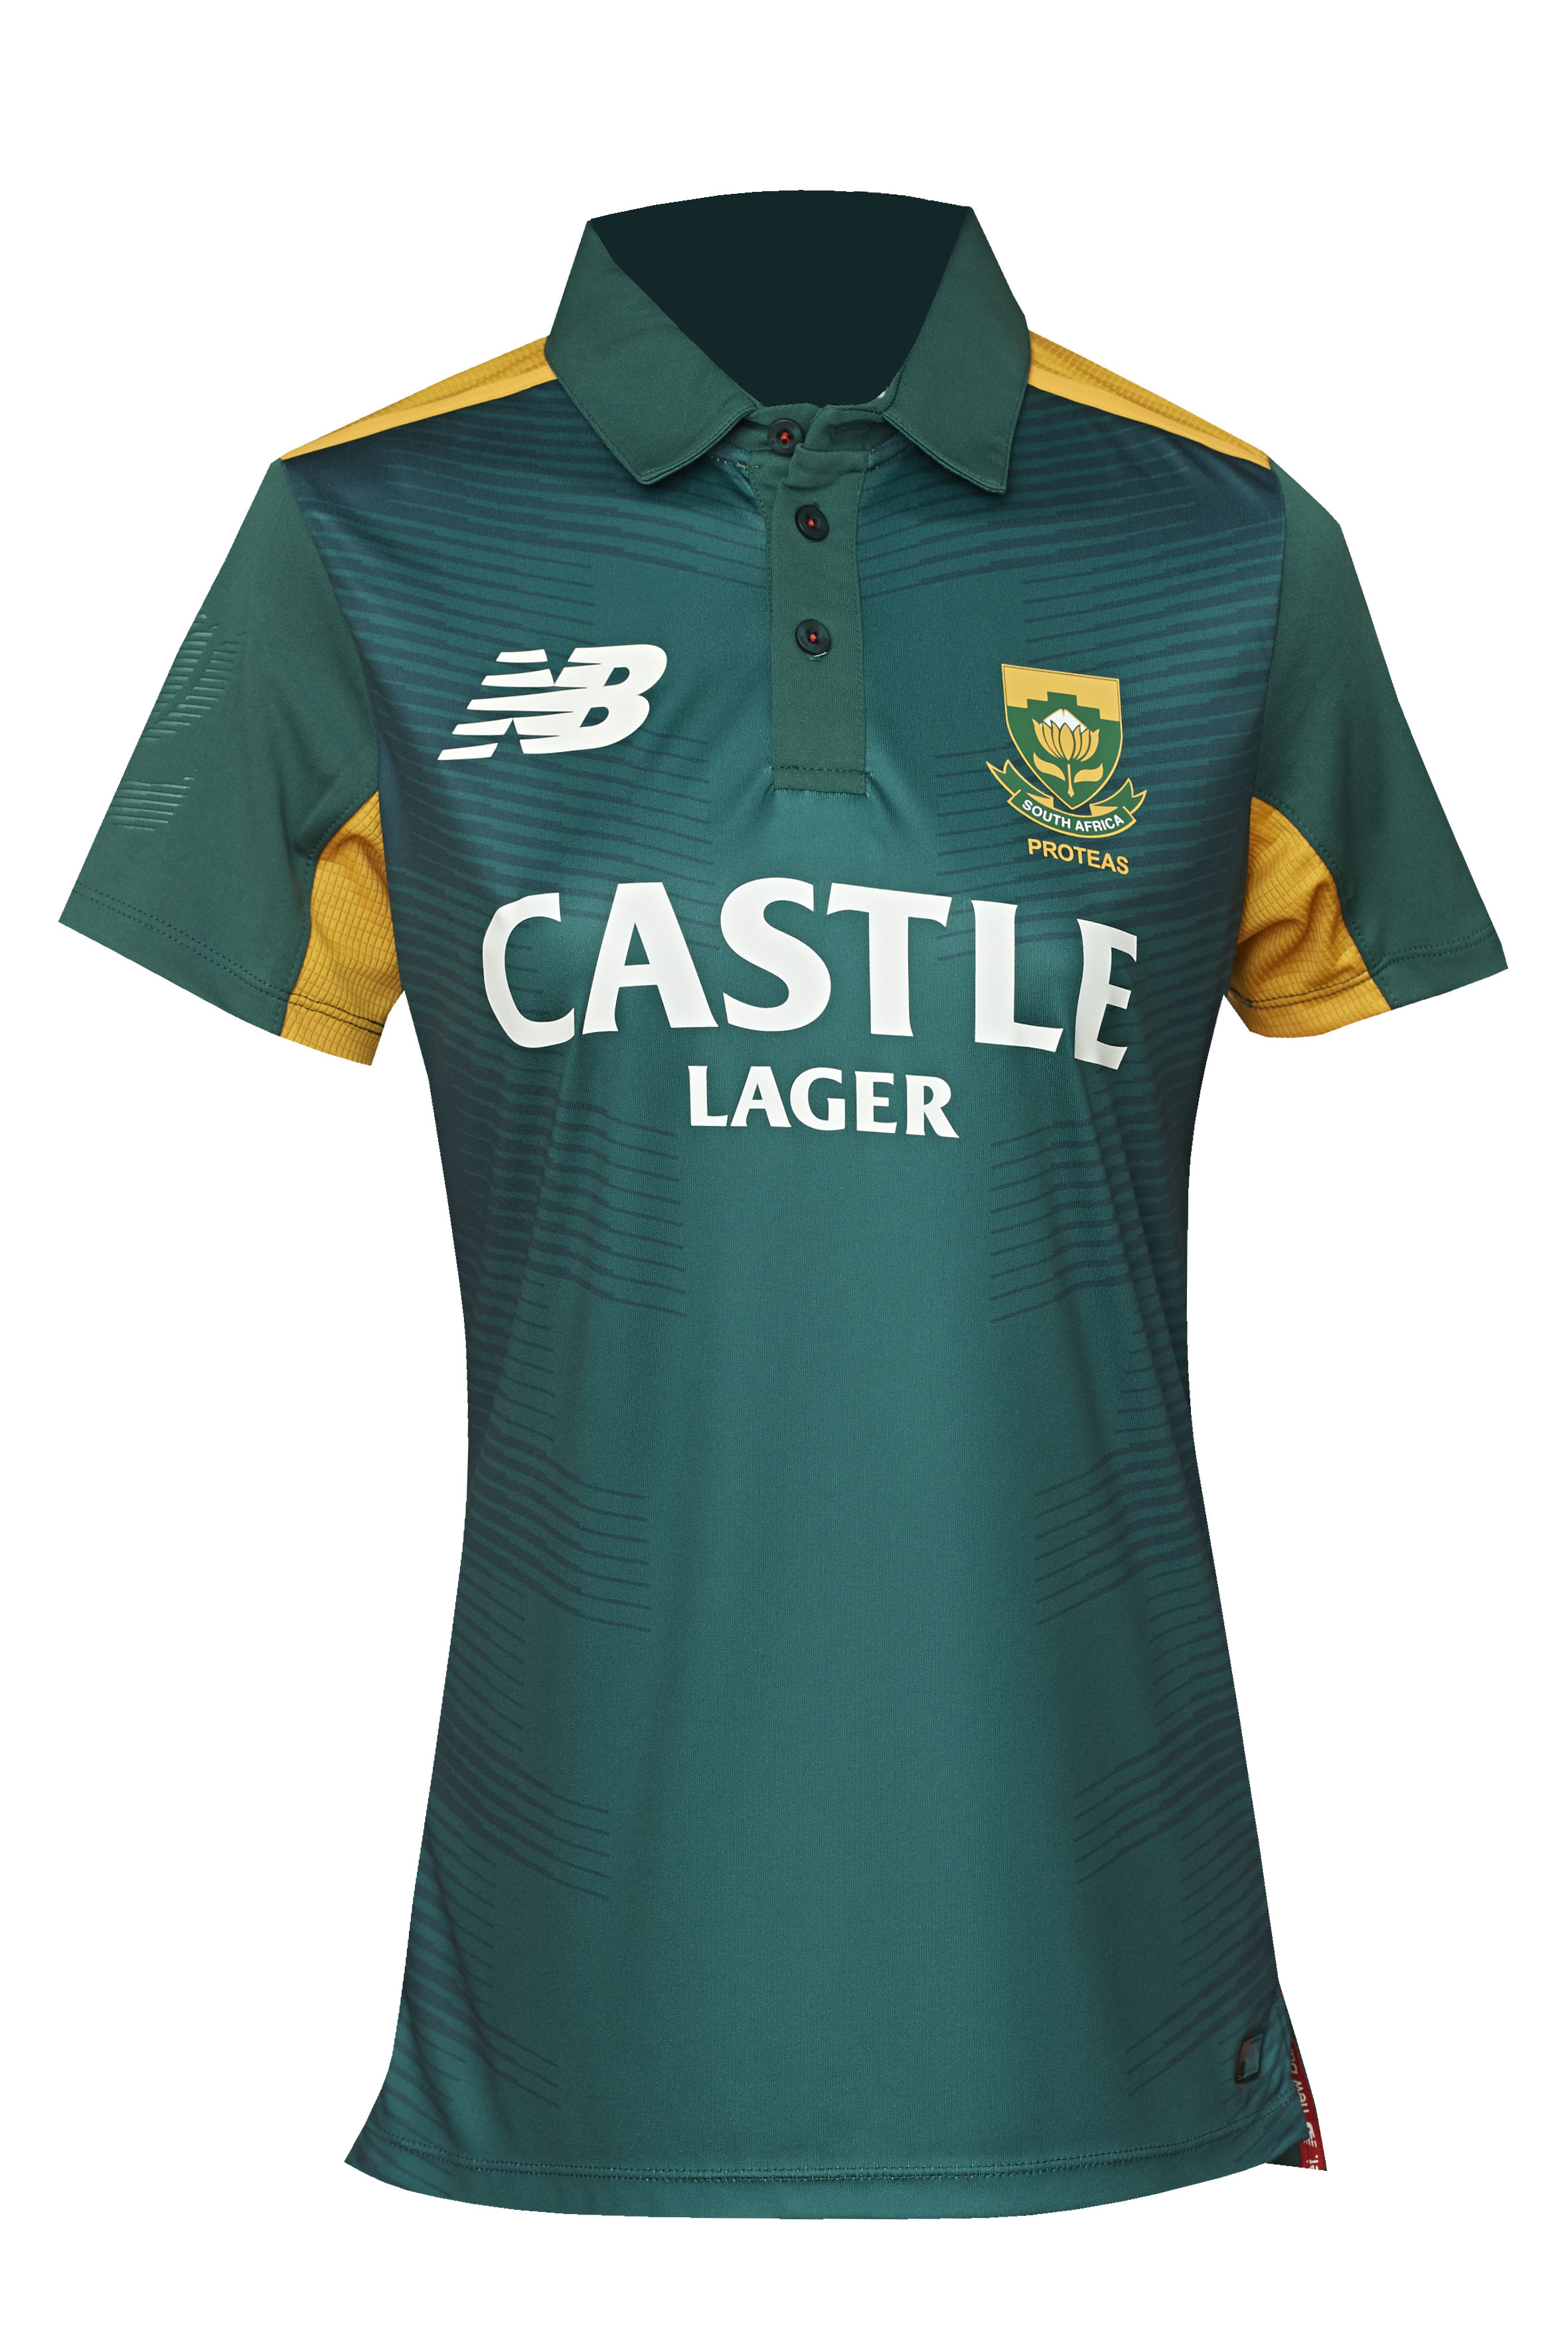 proteas cricket shirt